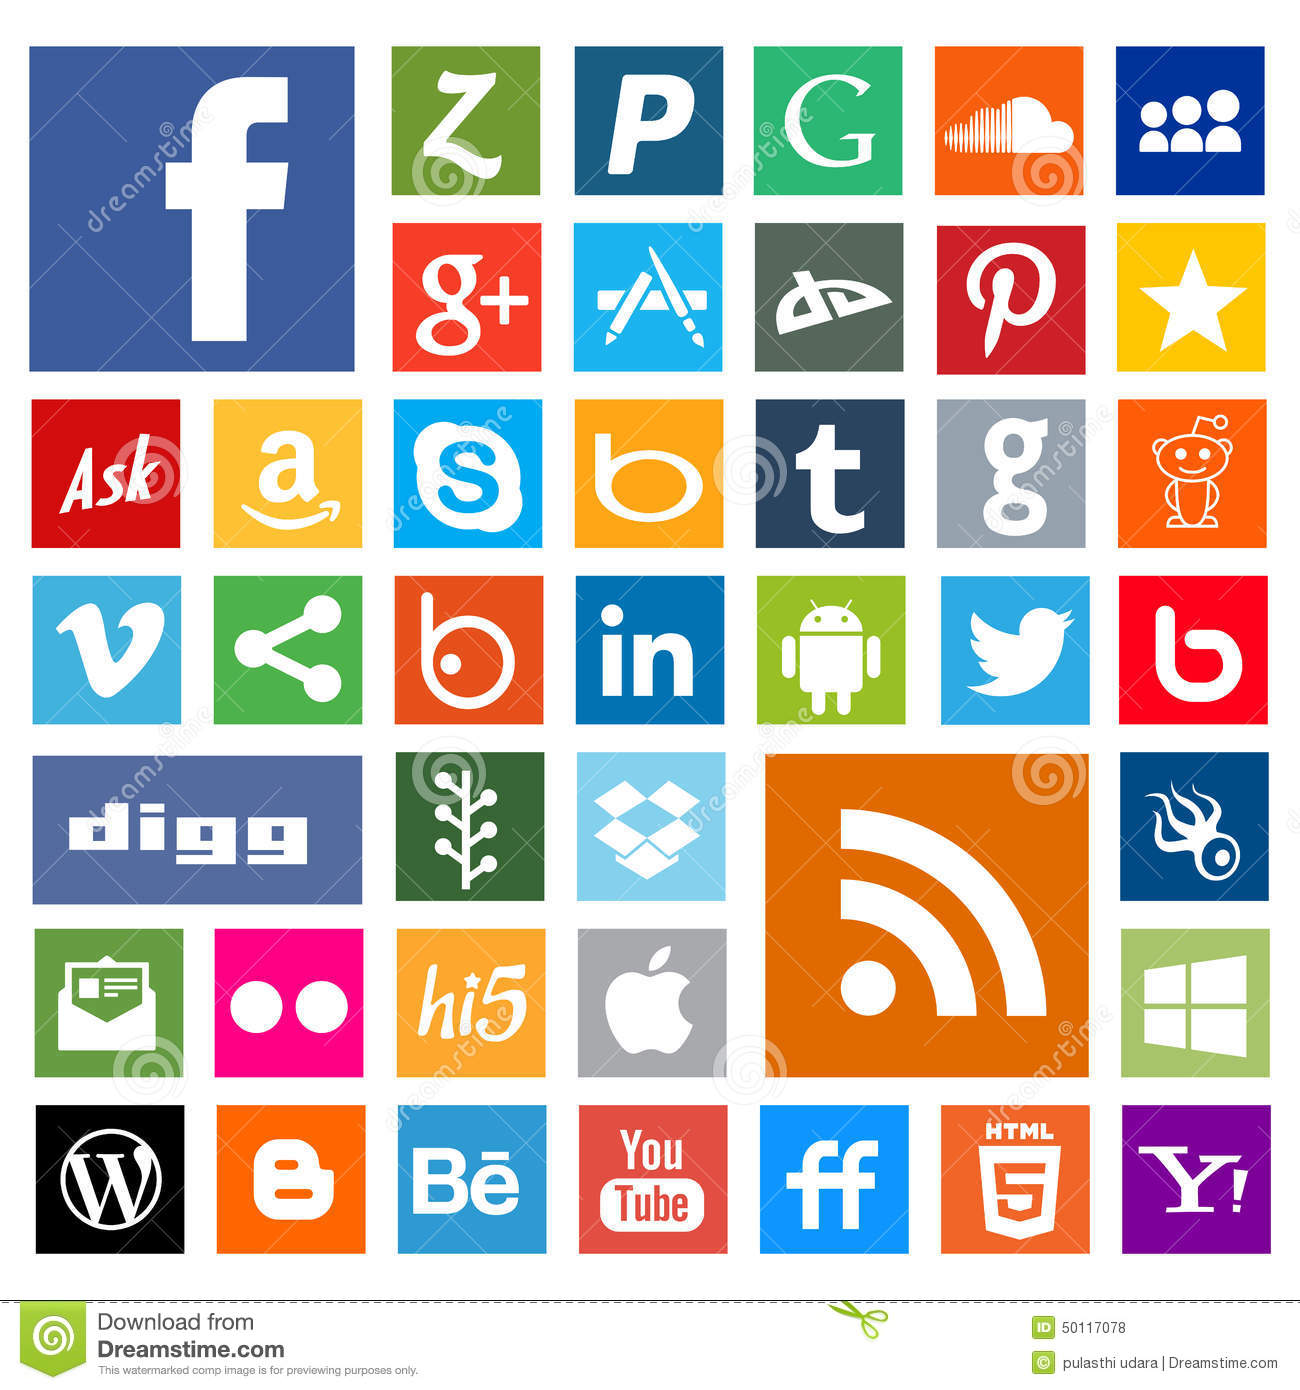 Most Popular Social Media Icons